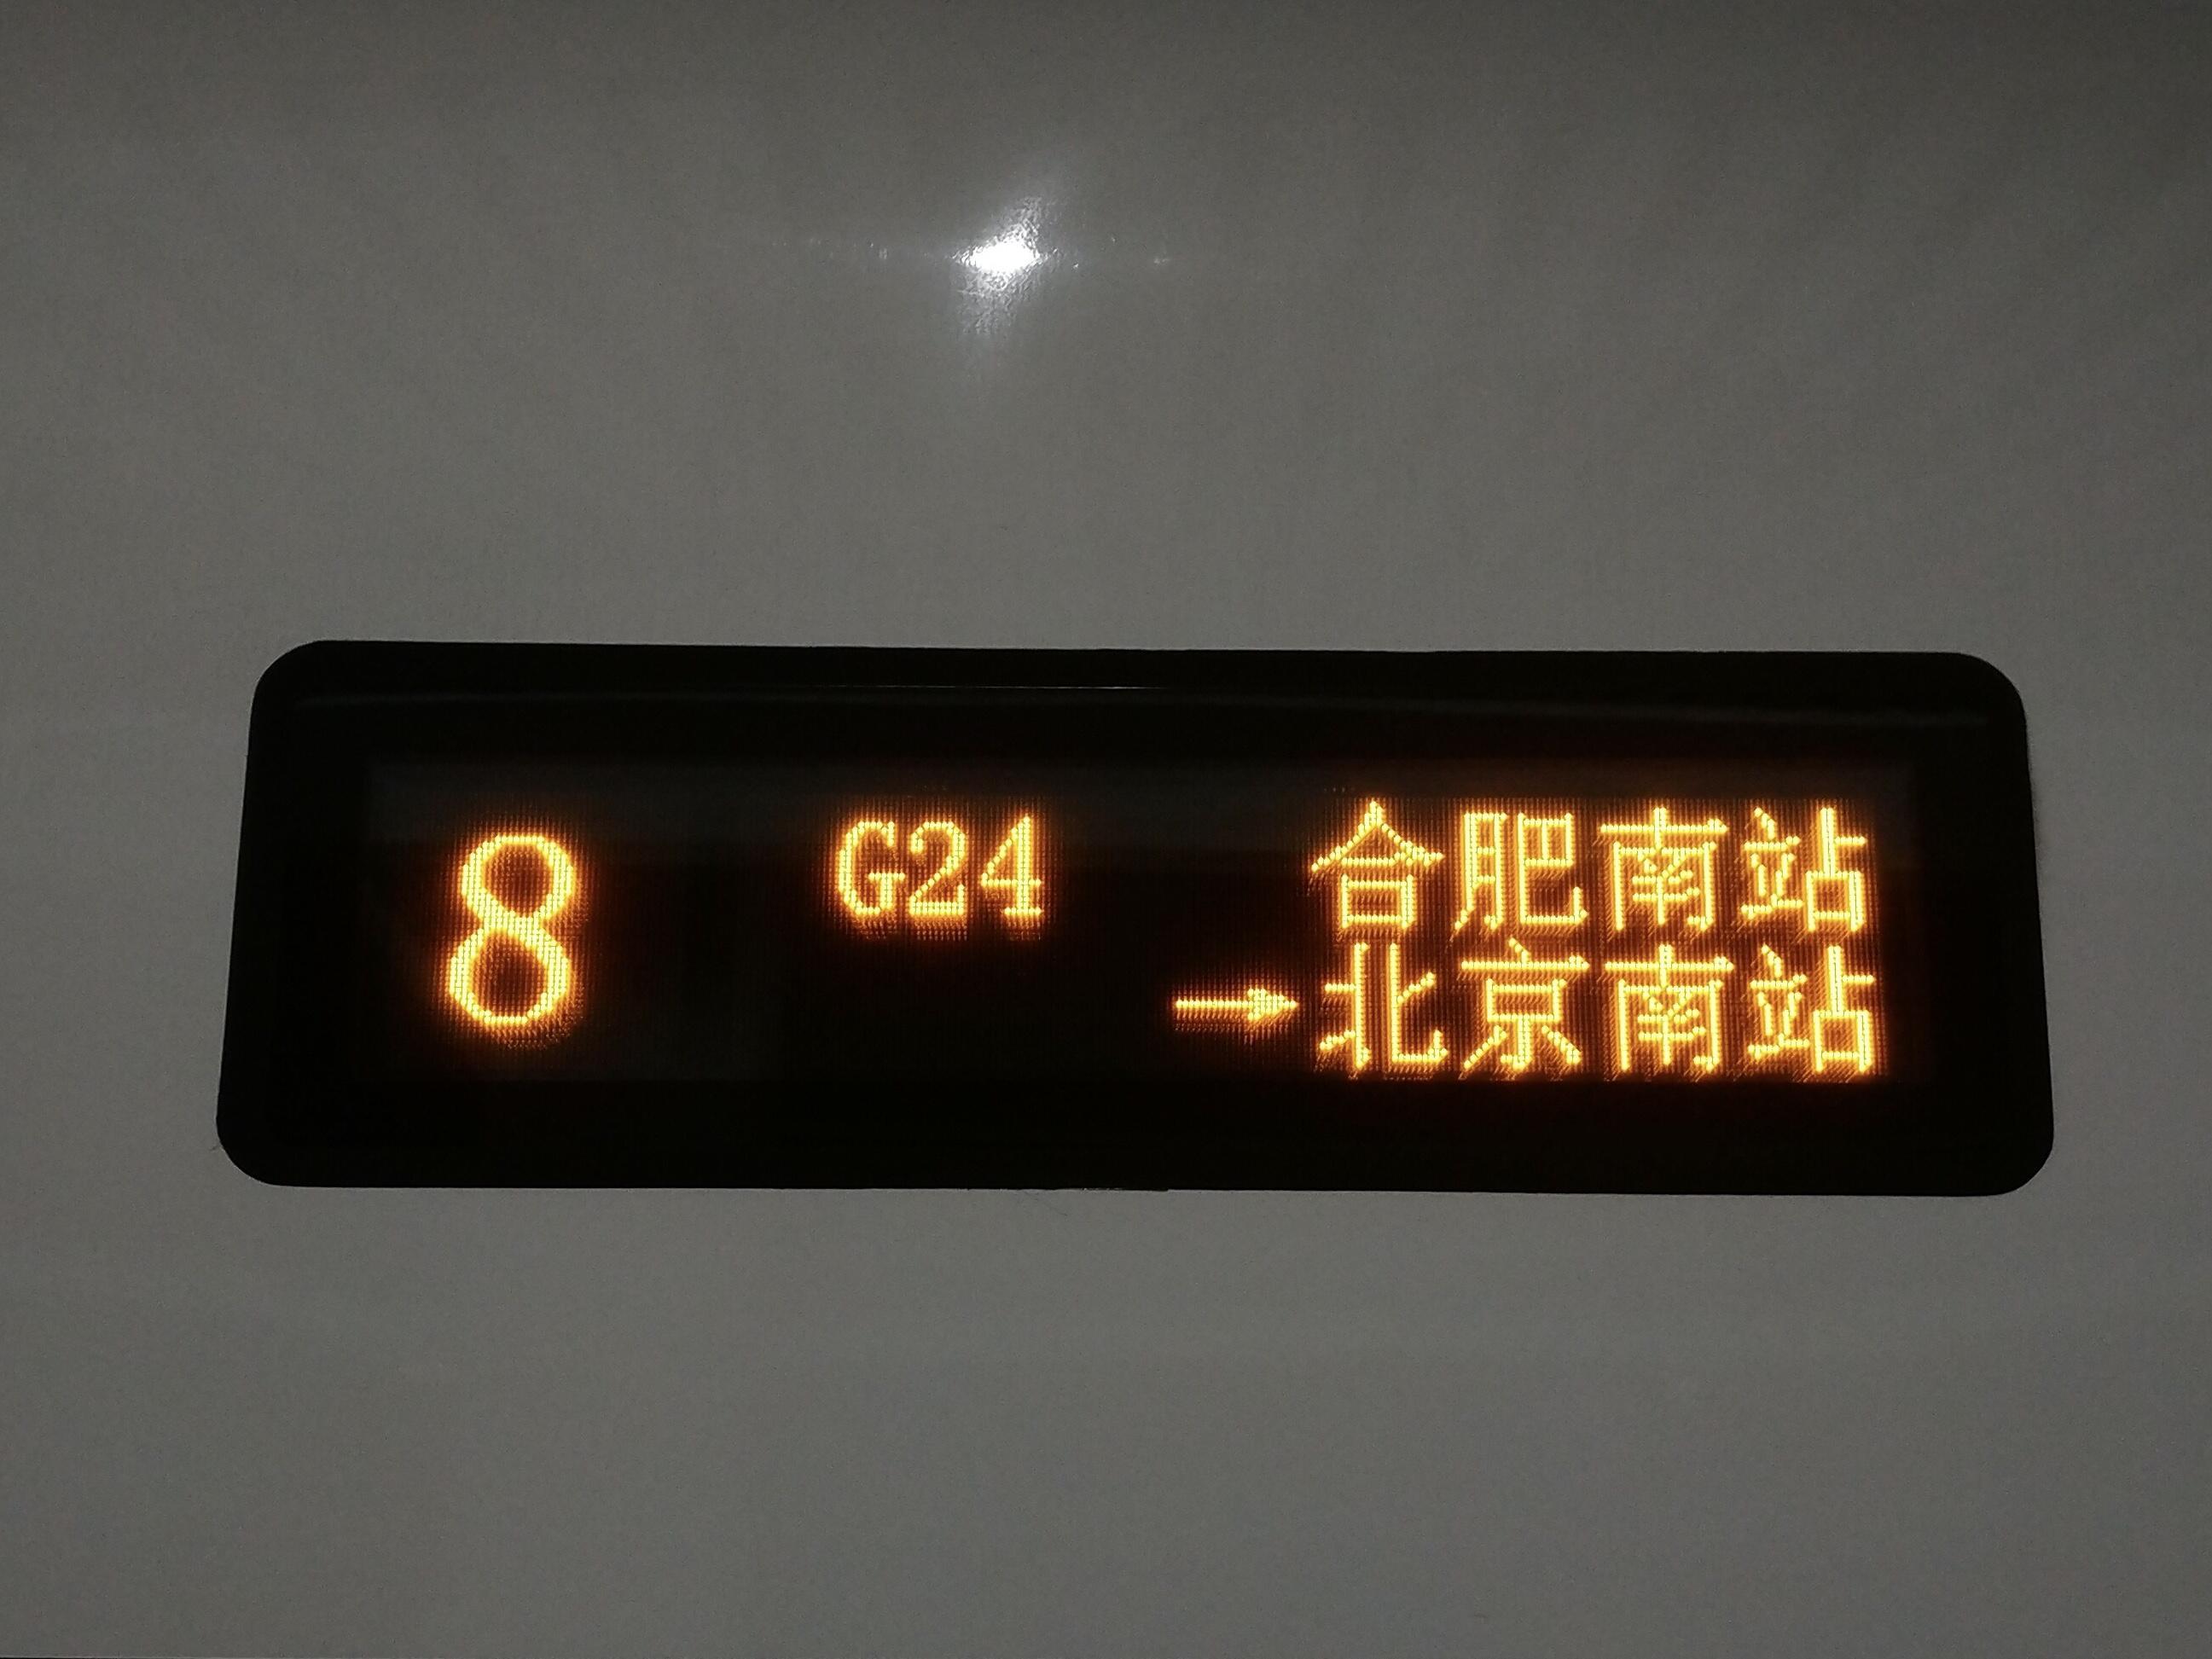 火车车次开头的N、Z、T、K是什么意思？-火车车次开头的字母代表什么意思？